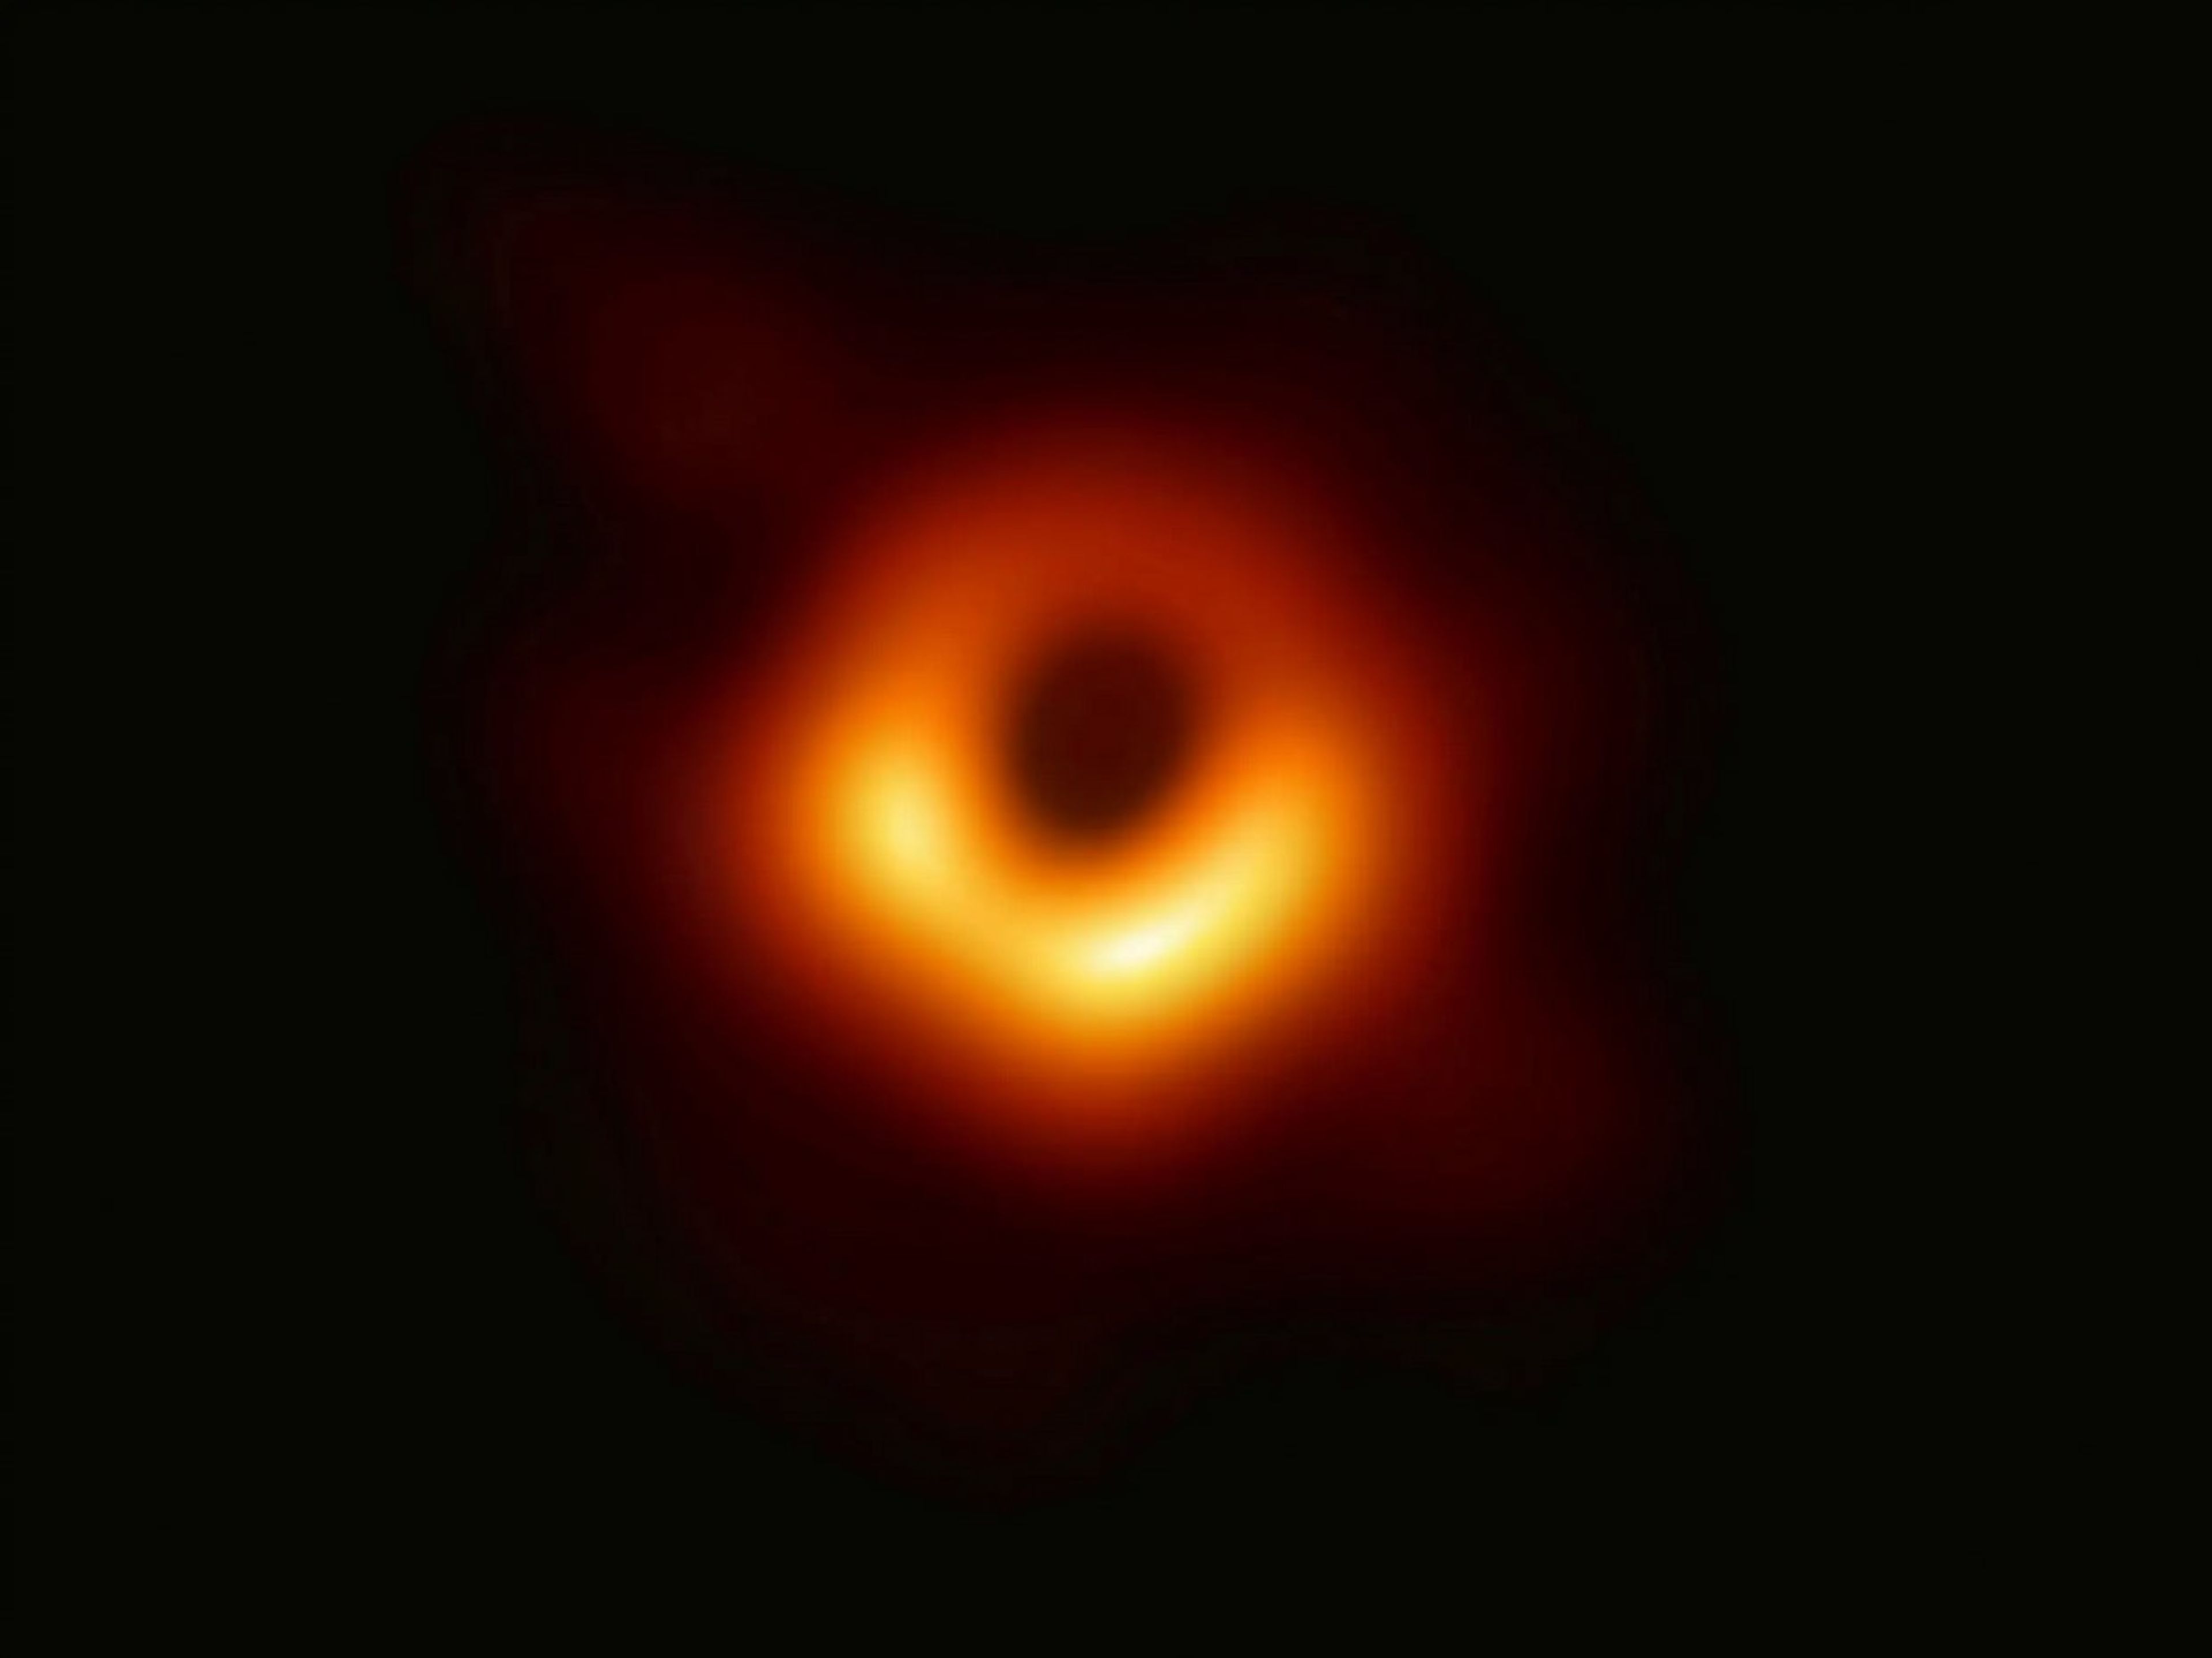 Primer imagen de un agujero negro, tomada por el Telescopio de Horizonte de Sucesos, y publicada en abril de 2019.